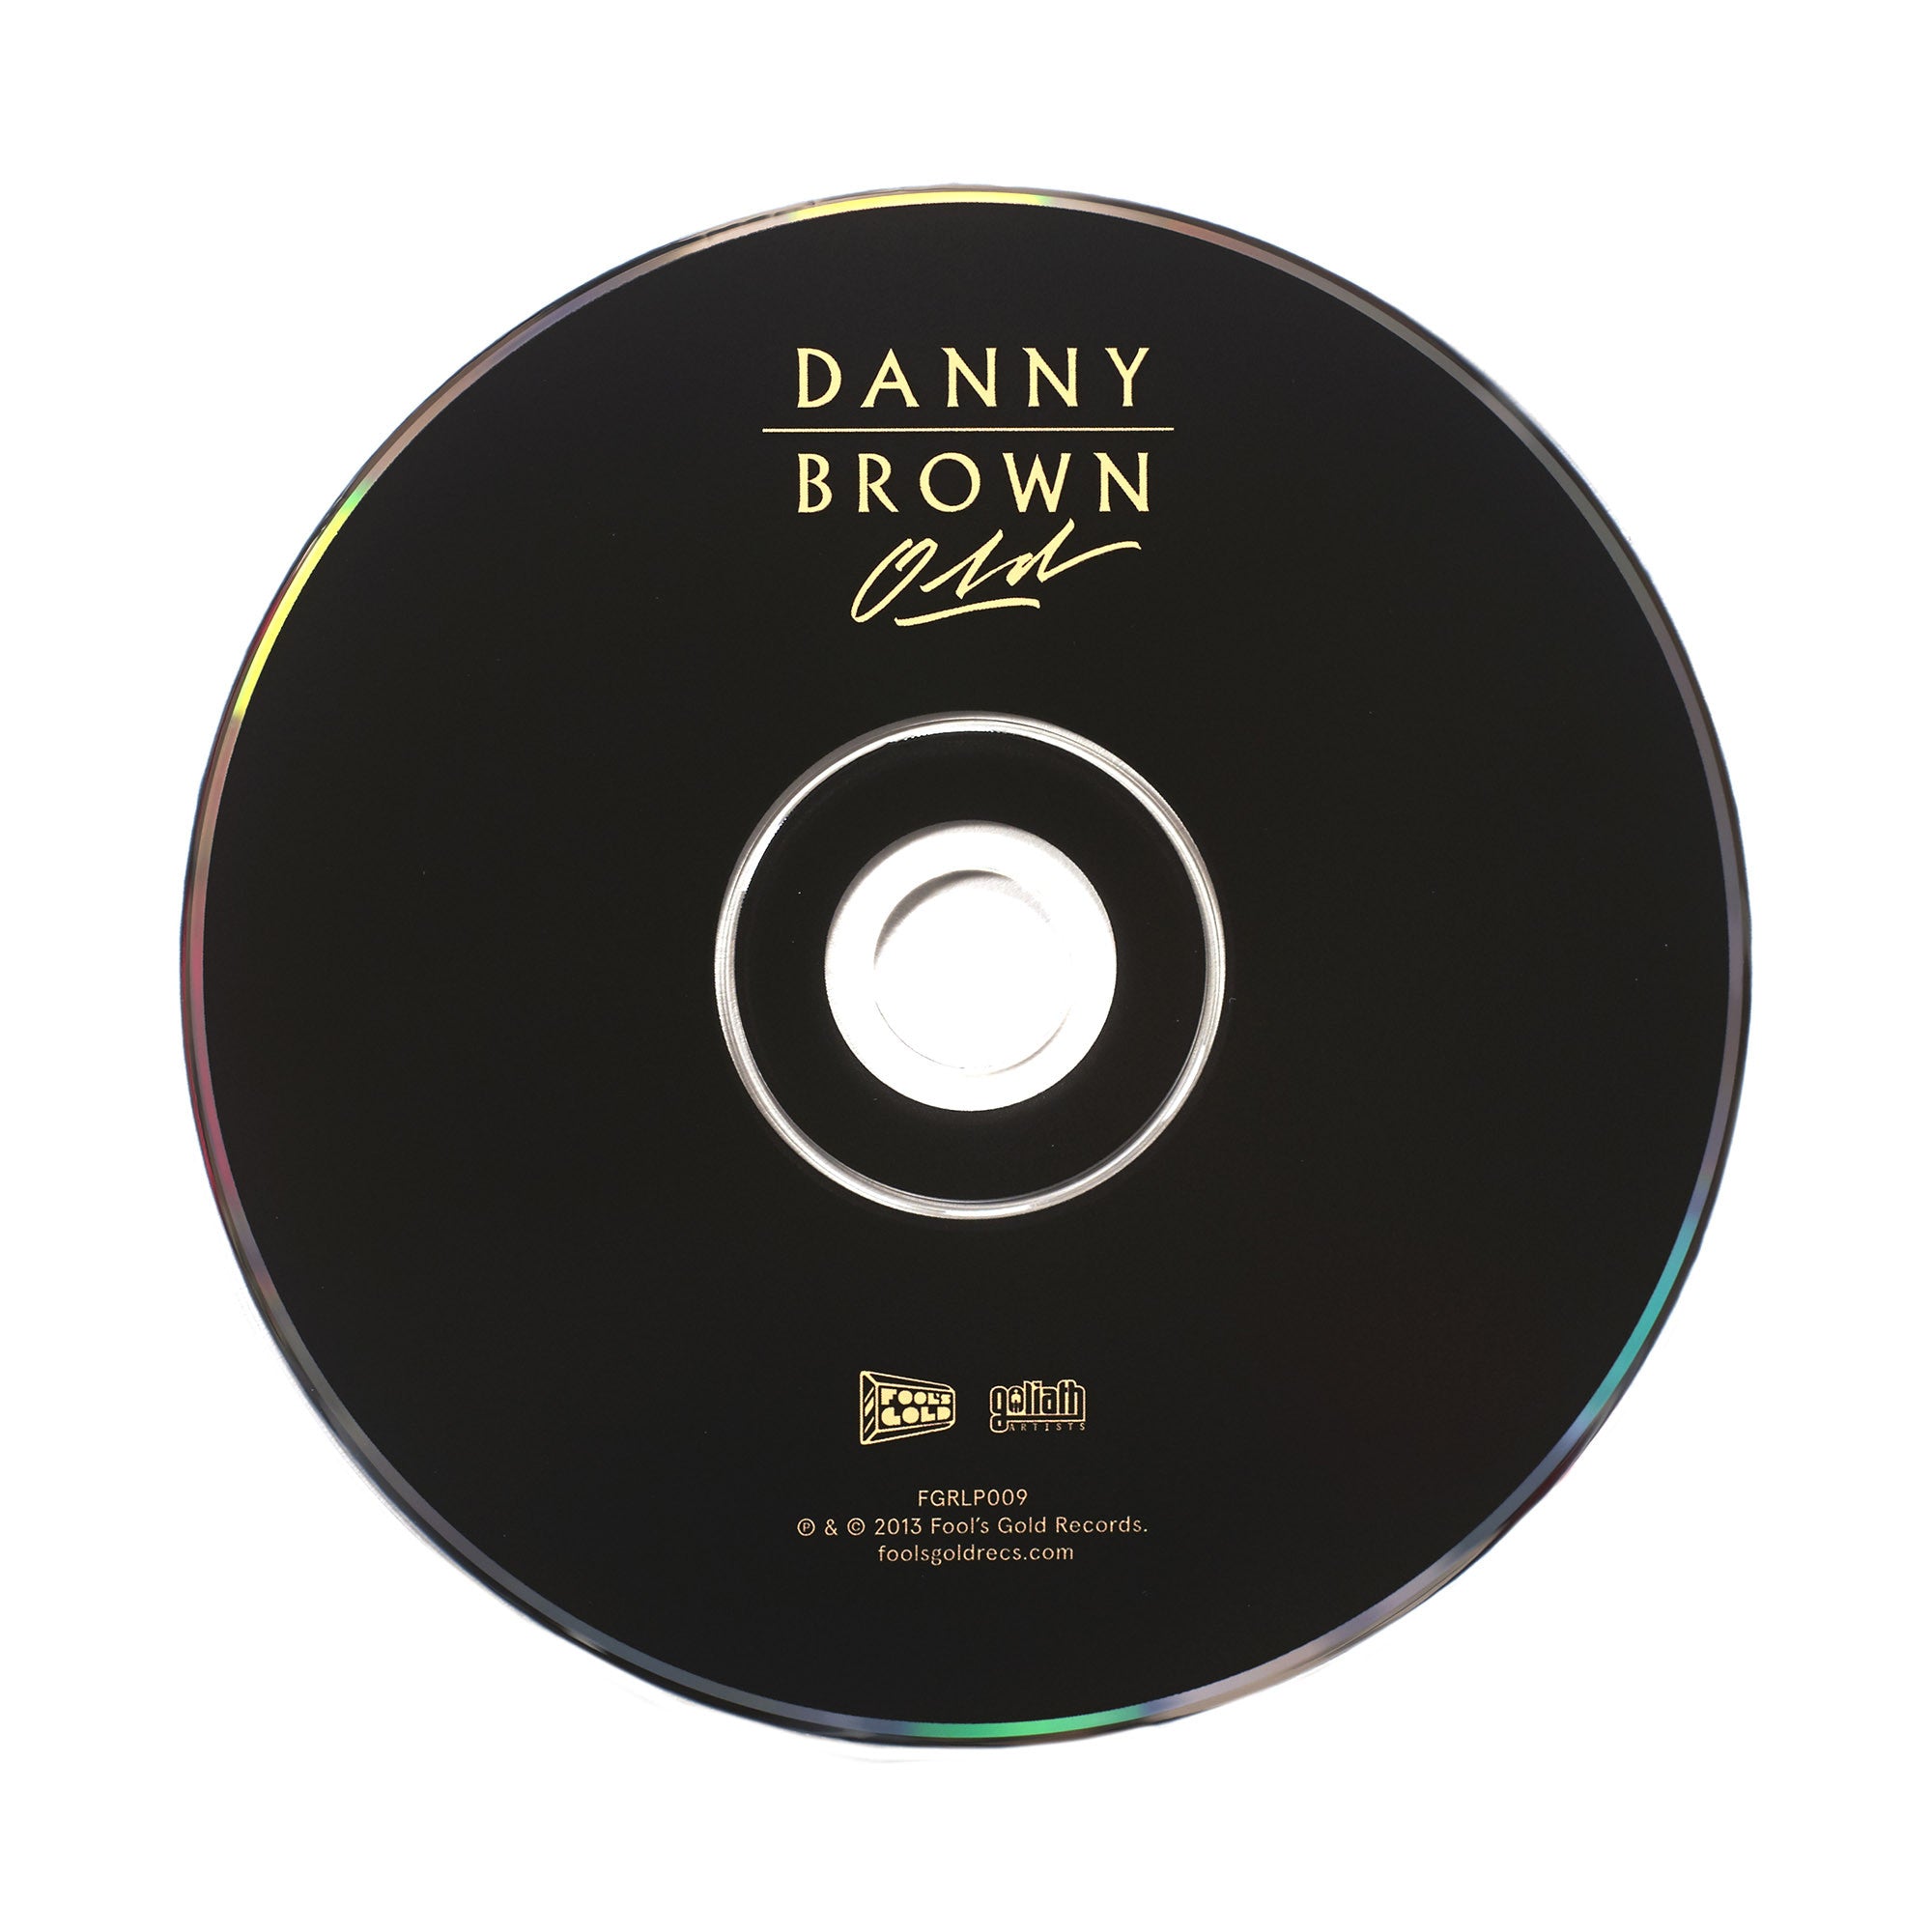 Danny Brown “Old” CD